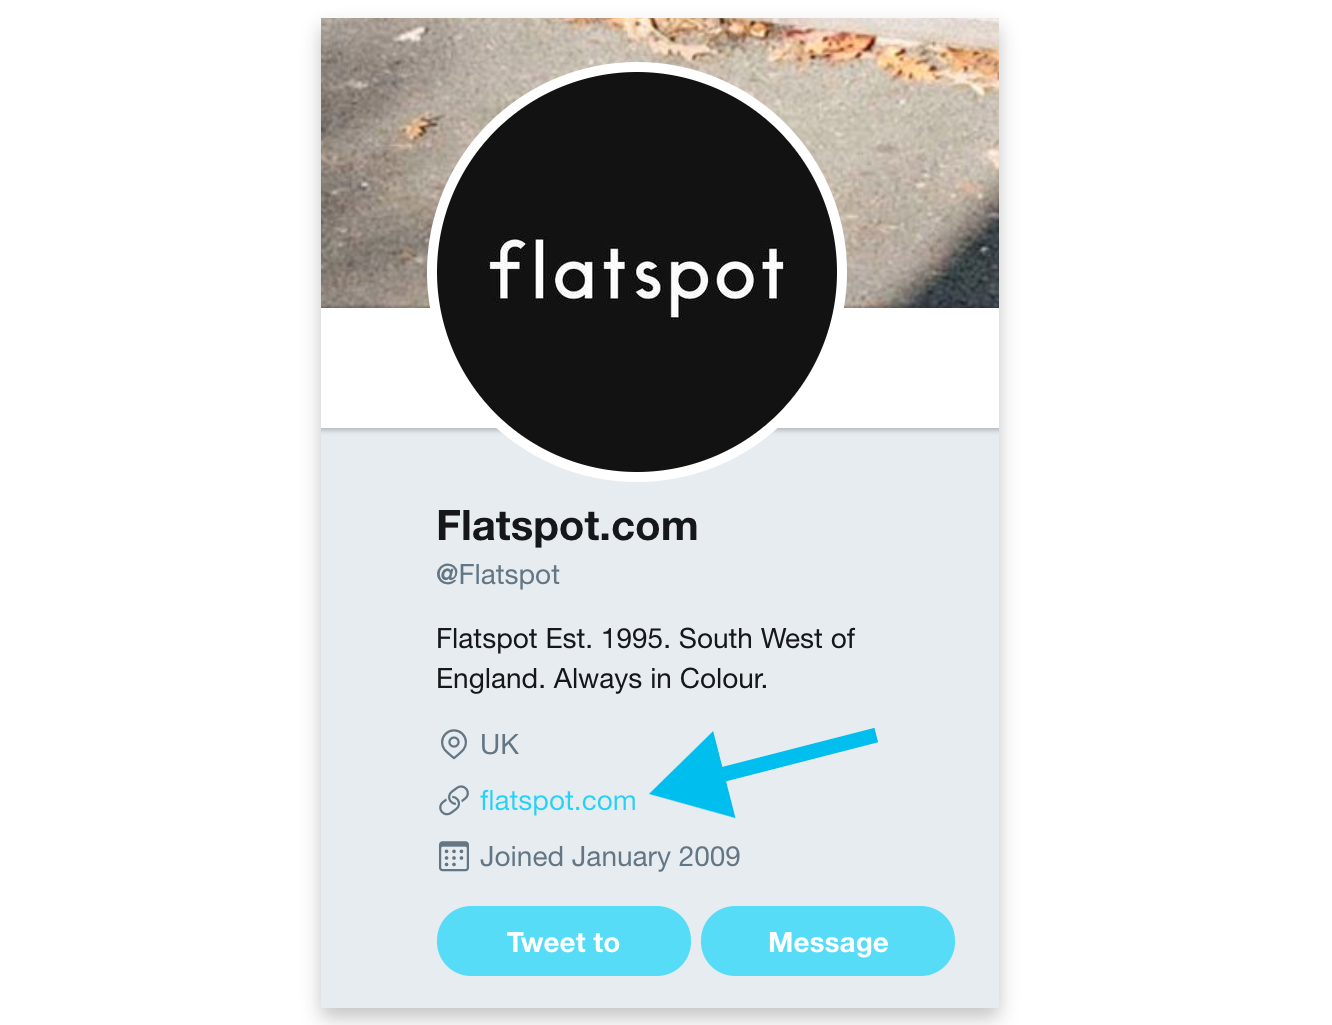 Screenshot showing flatspot